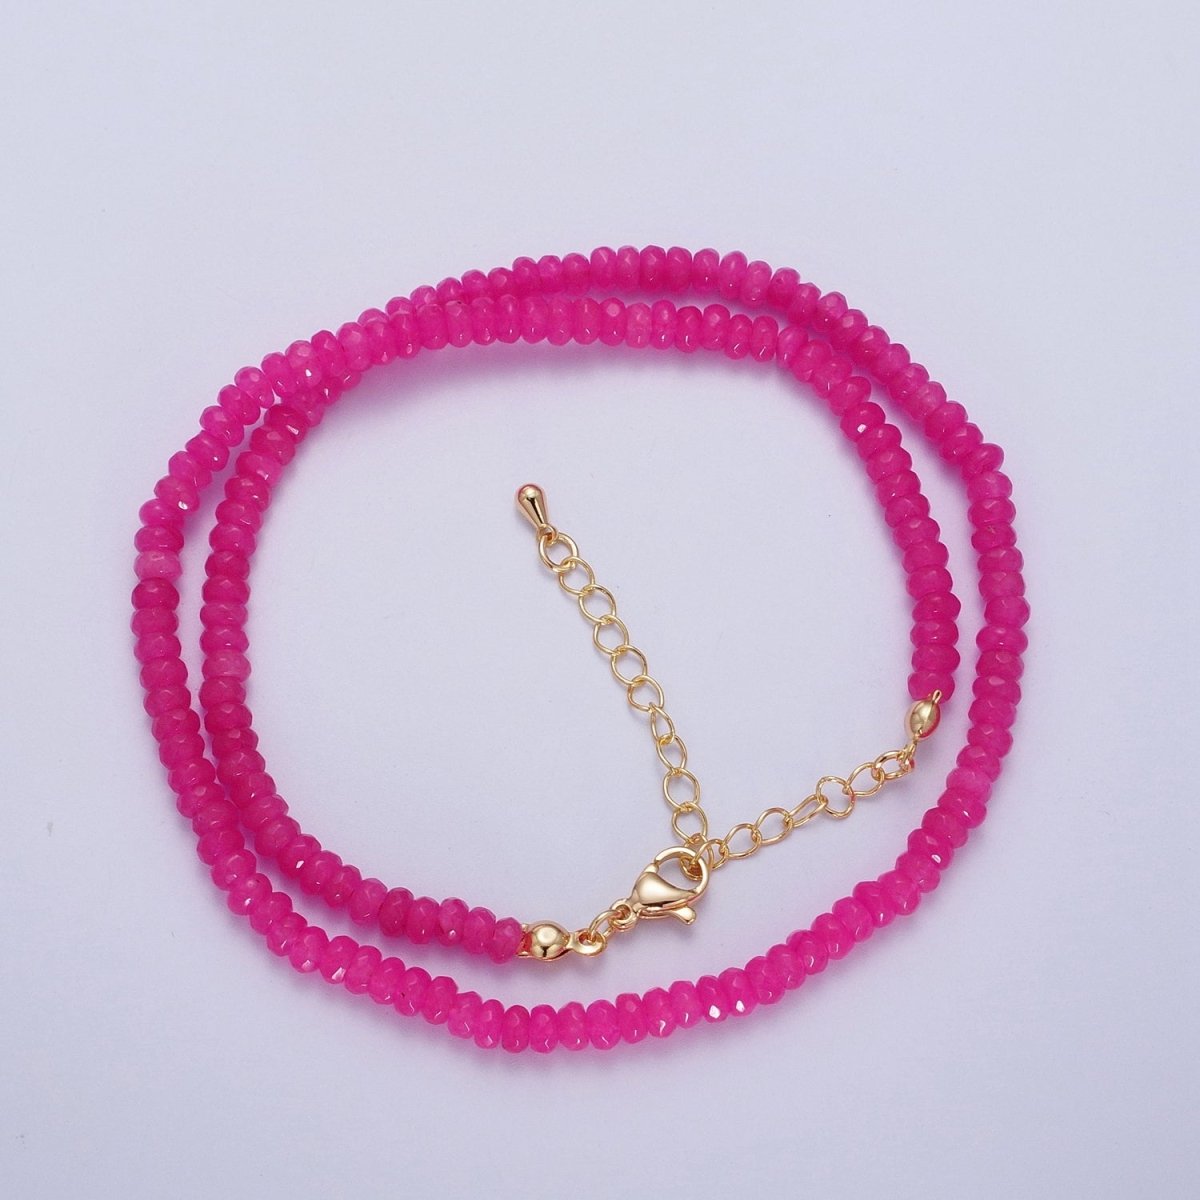 16 Inch Rhondelle 5mm Natural Stone Beads Handmade Necklaces | WA-1438 - WA-1443 WA-1480 - WA-1485 Clearance Pricing - DLUXCA